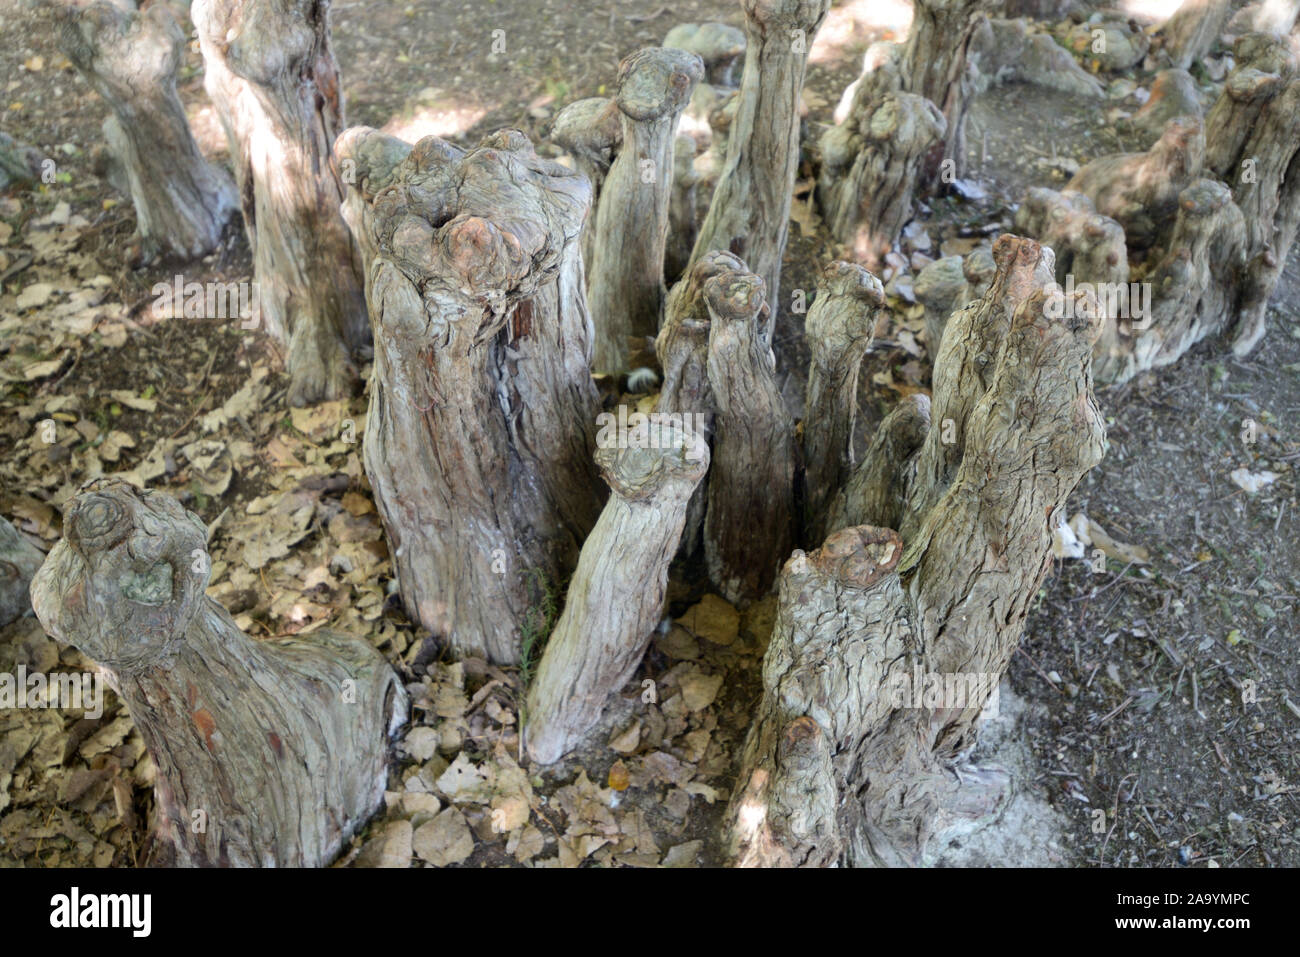 Cypress ginocchia o pneumatofori di Cypress Taxodium distichum in Borely giardino botanico o Parco Marsiglia Francia Foto Stock